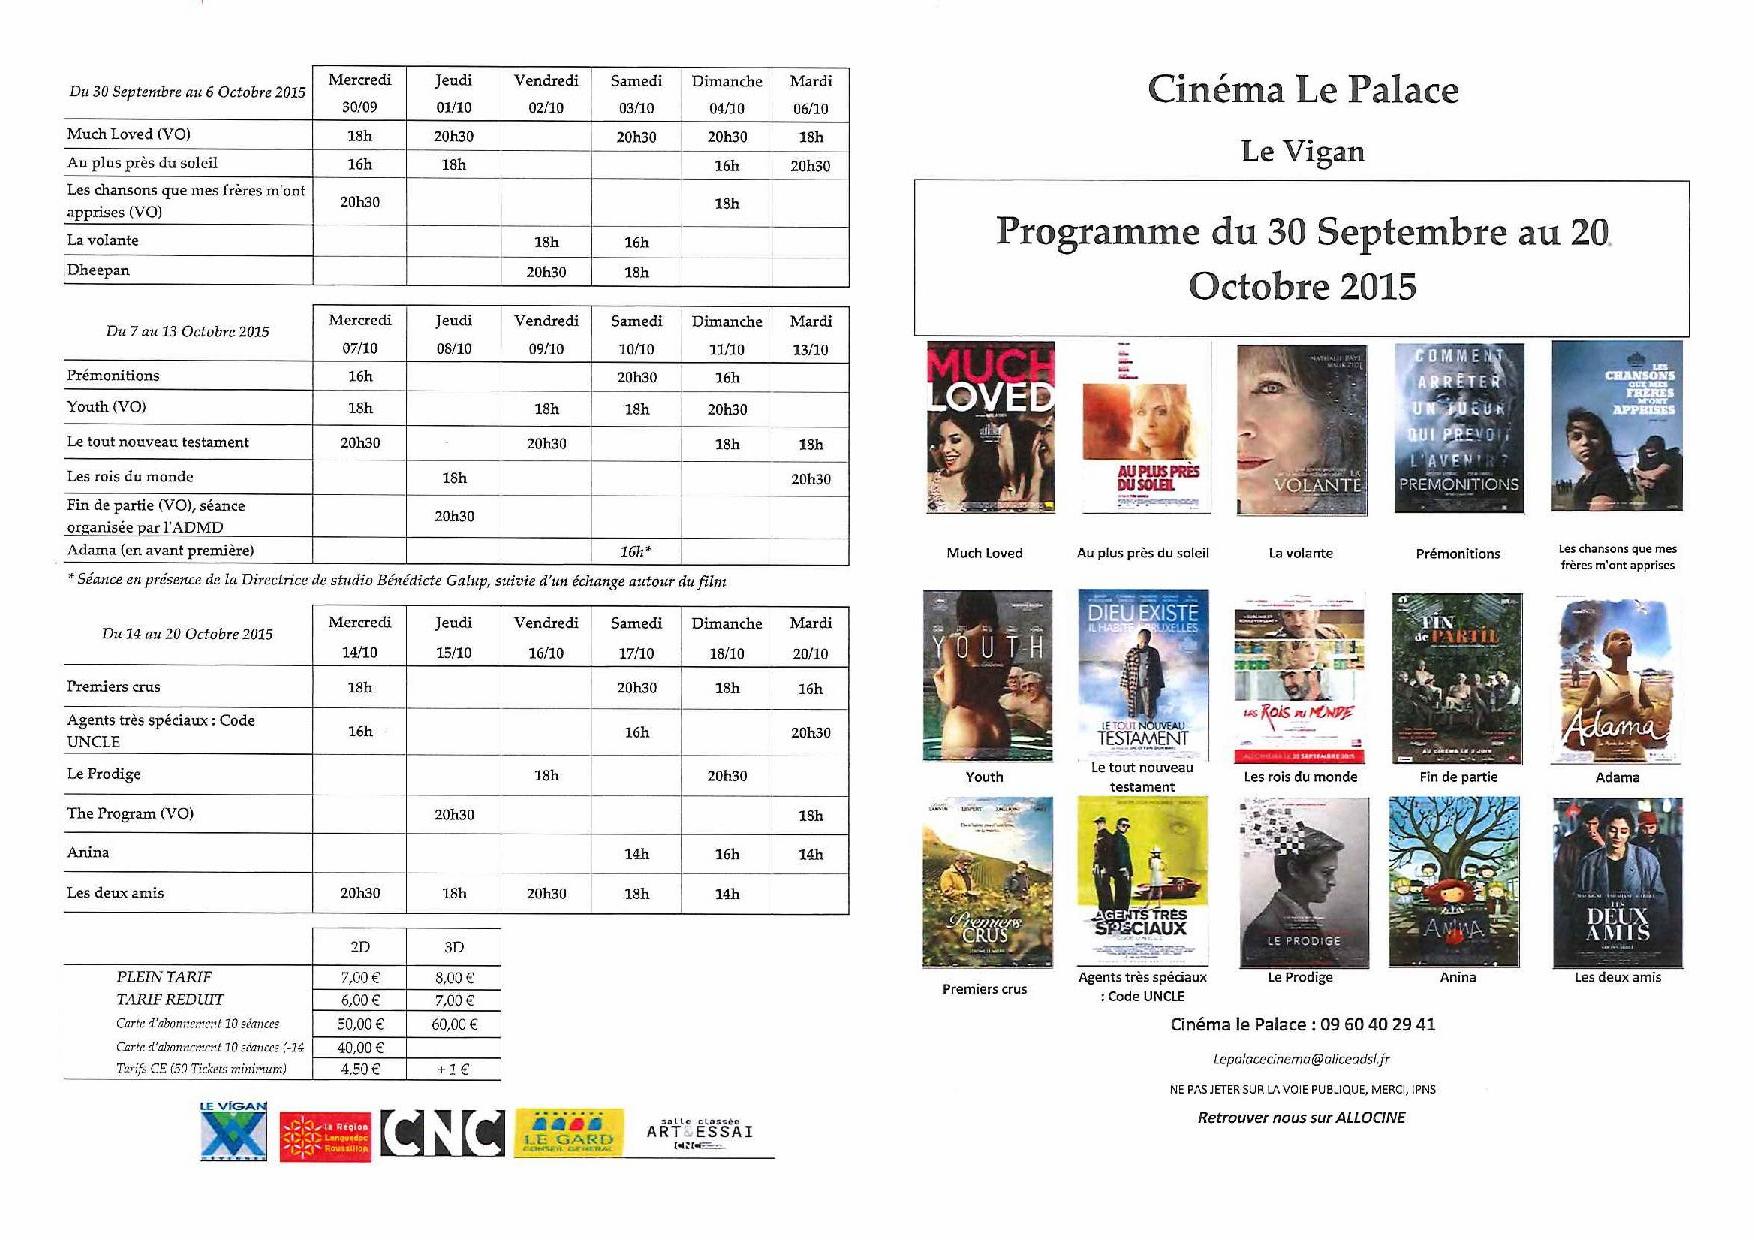 Programme du Cinéma Le Palace du 30 Septembre au 20 Octobre 2015